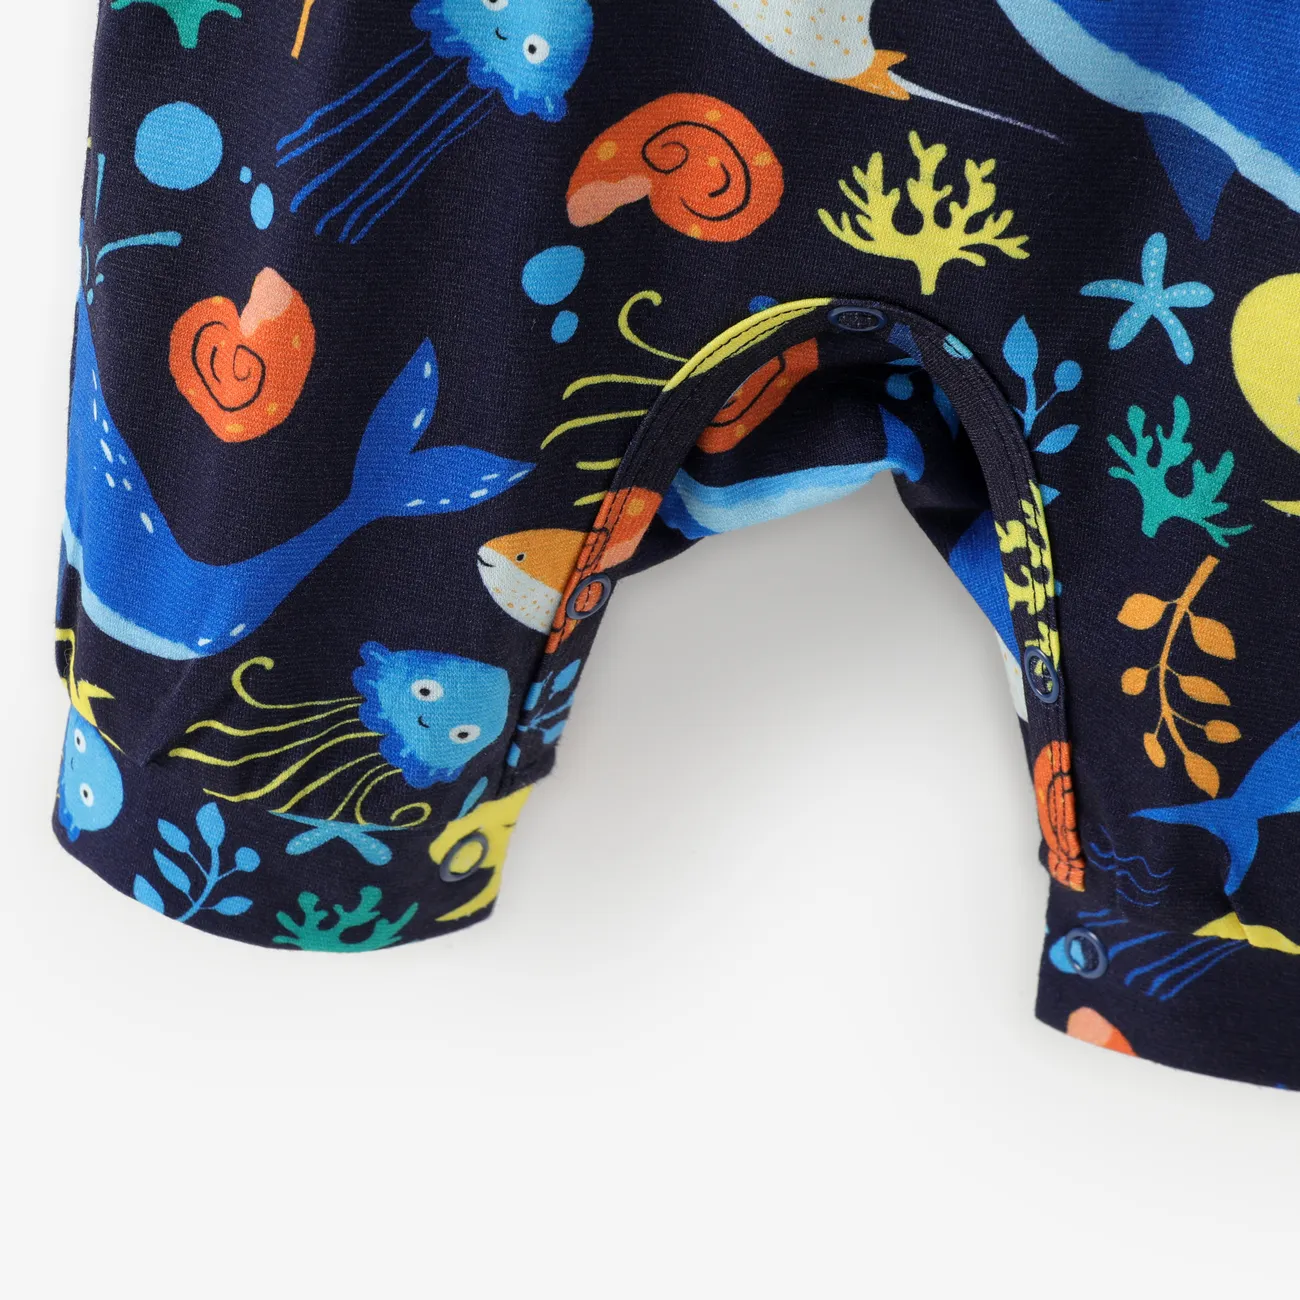 Baby Boy Marine Animal Print Pyjama Jumpsuit mit Kapuze dunkelblau big image 1